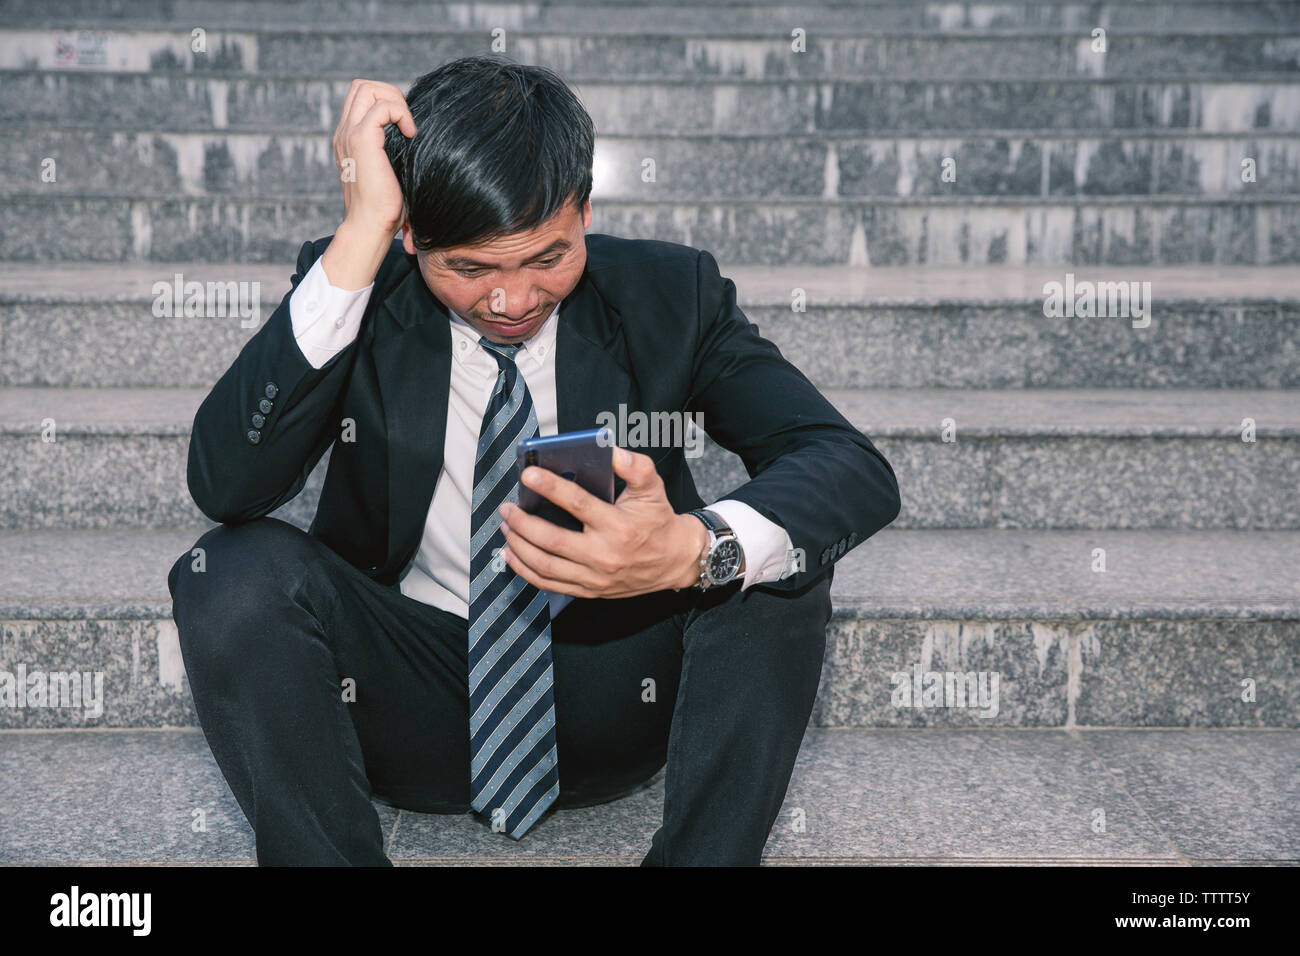 Asiatische Geschäftsleute mit Kopfschmerzen oder Migräne im Rathaus nach der Arbeit Bilder der jungen Unternehmer, die müde sind, Stress, Krise, Depression, failu Stockfoto